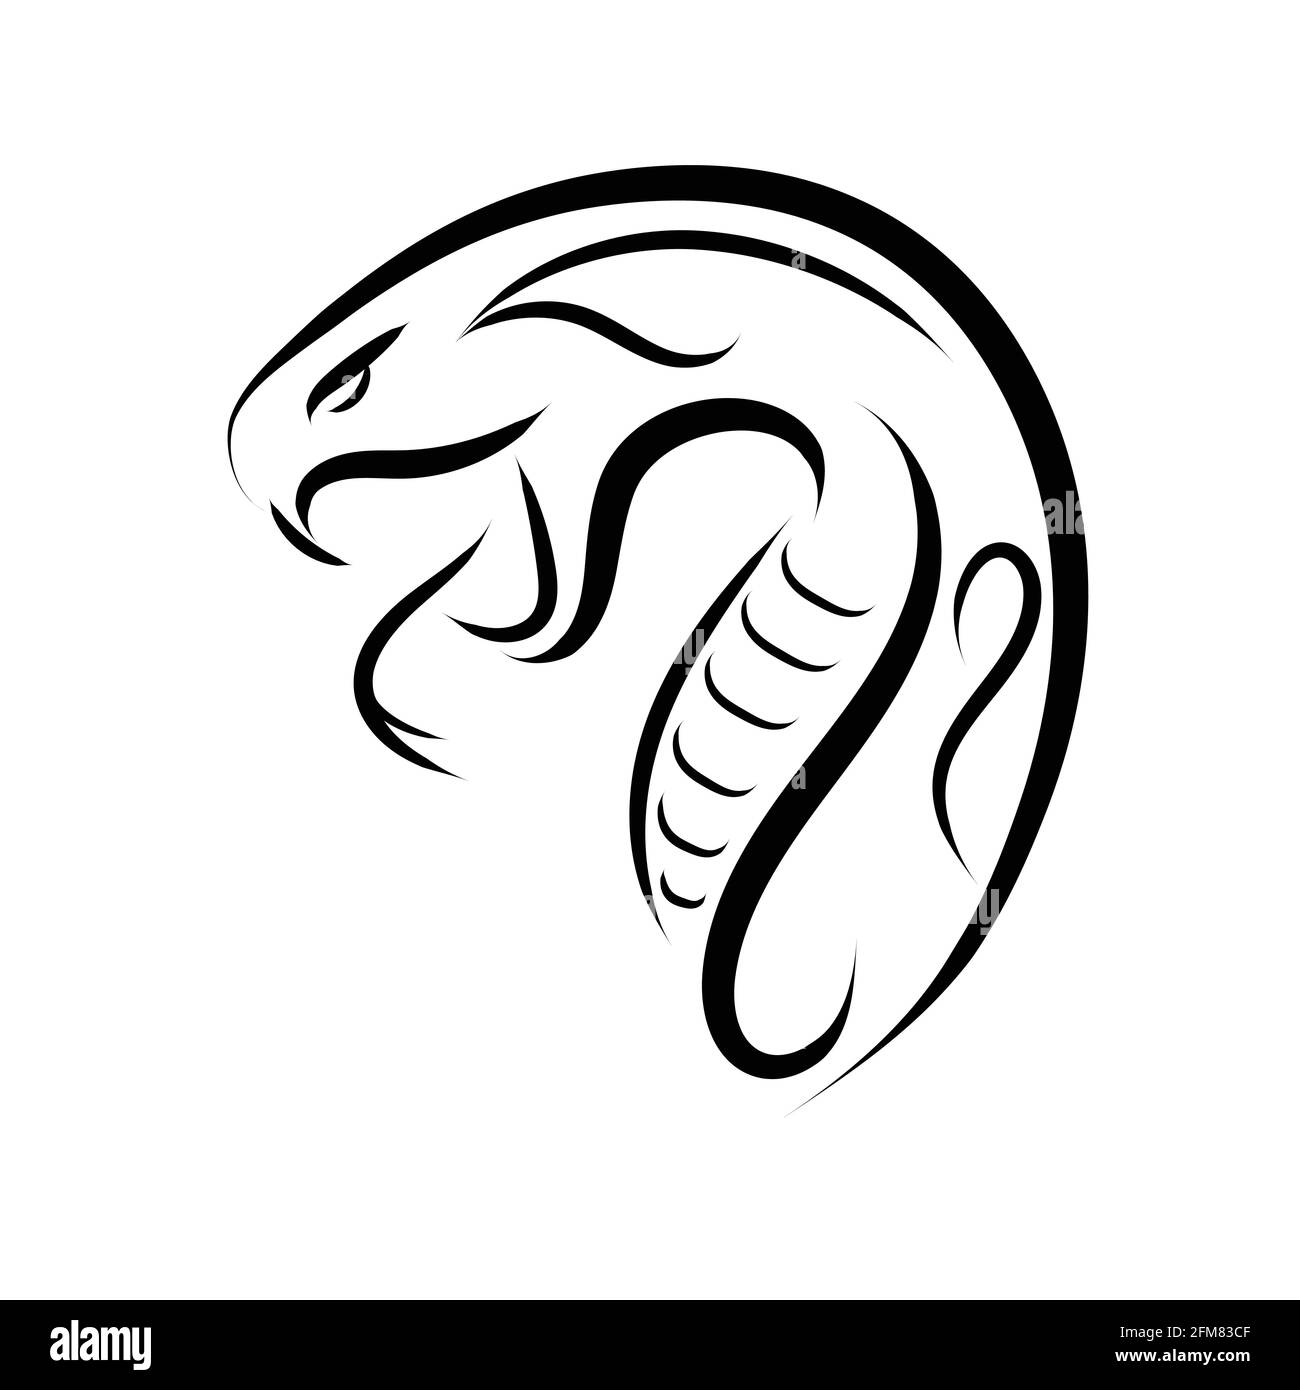 Linea bianca e nera dell'arte della testa del serpente. Buon uso per simbolo, mascotte, icona, avatar, tatuaggio, T Shirt design, logo o qualsiasi design che si desidera. Illustrazione Vettoriale